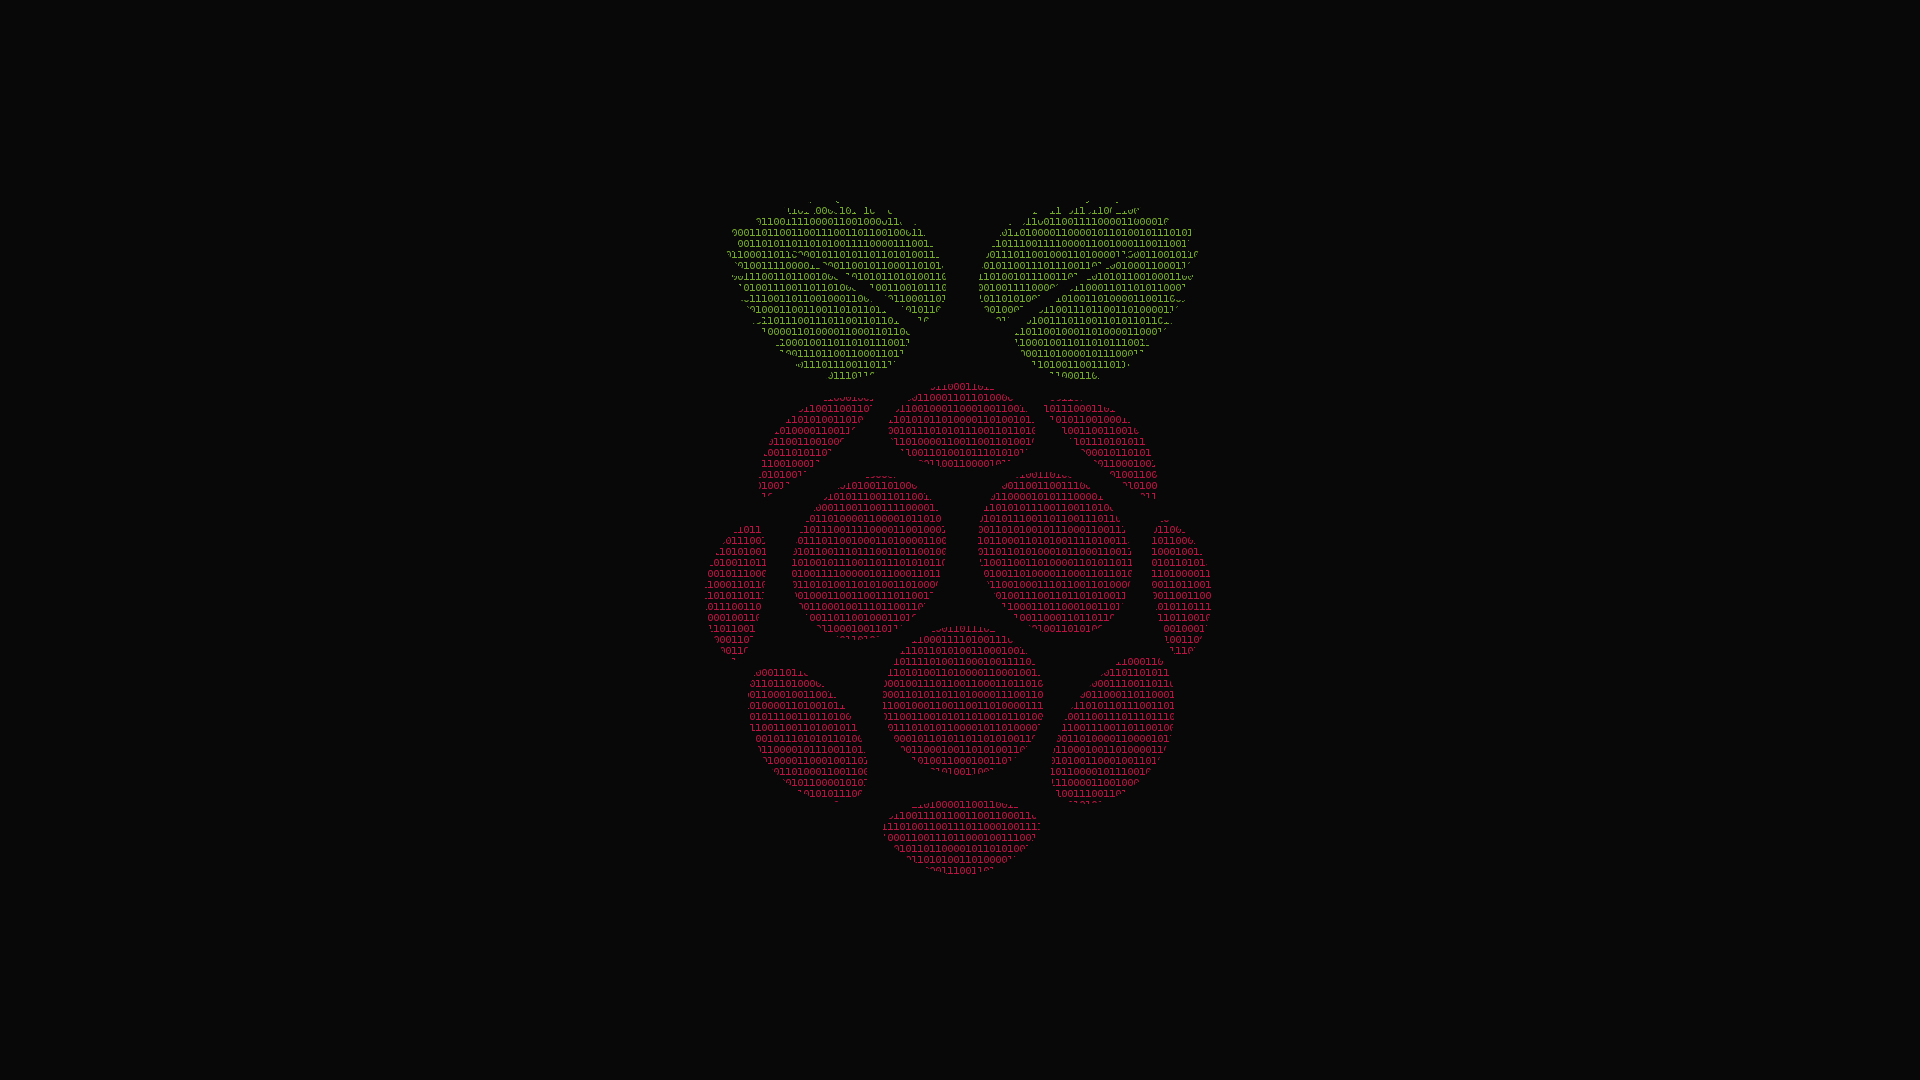 Raspberry pi 1920x1080 binary wallpaper